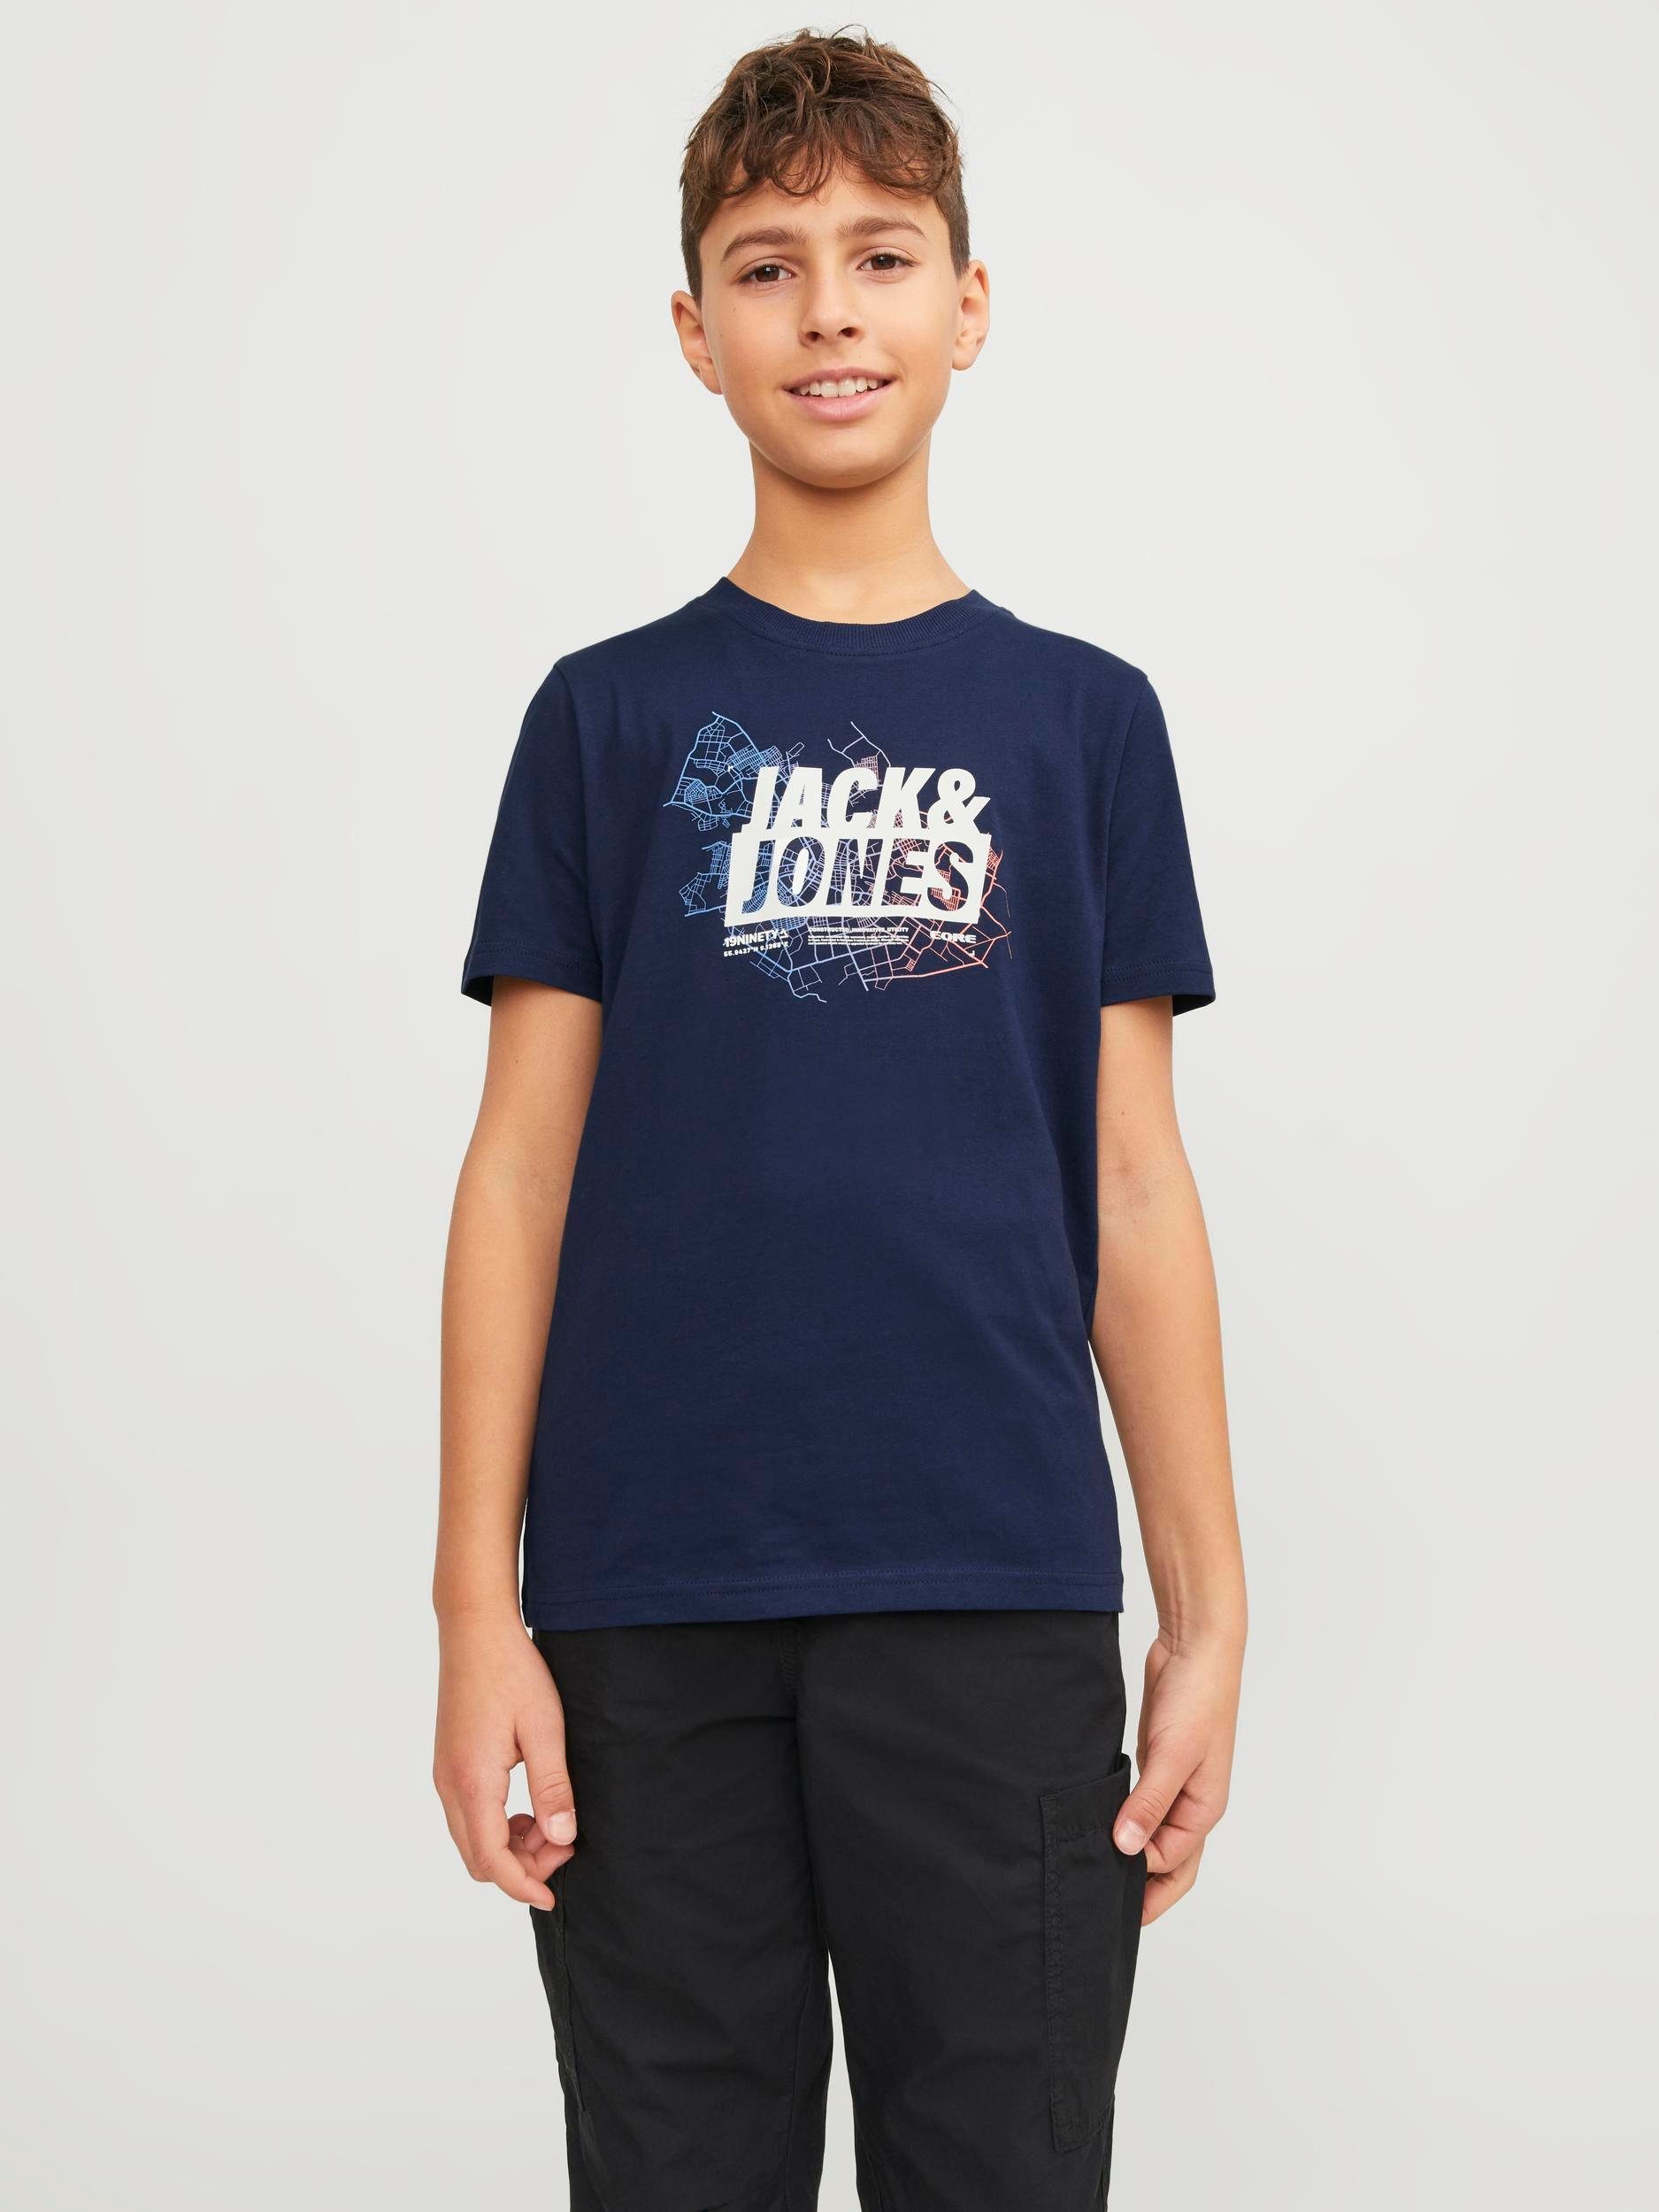 Jack & jones JUNIOR T-shirt JCOMAP met printopdruk donkerblauw Jongens Katoen Ronde hals 140